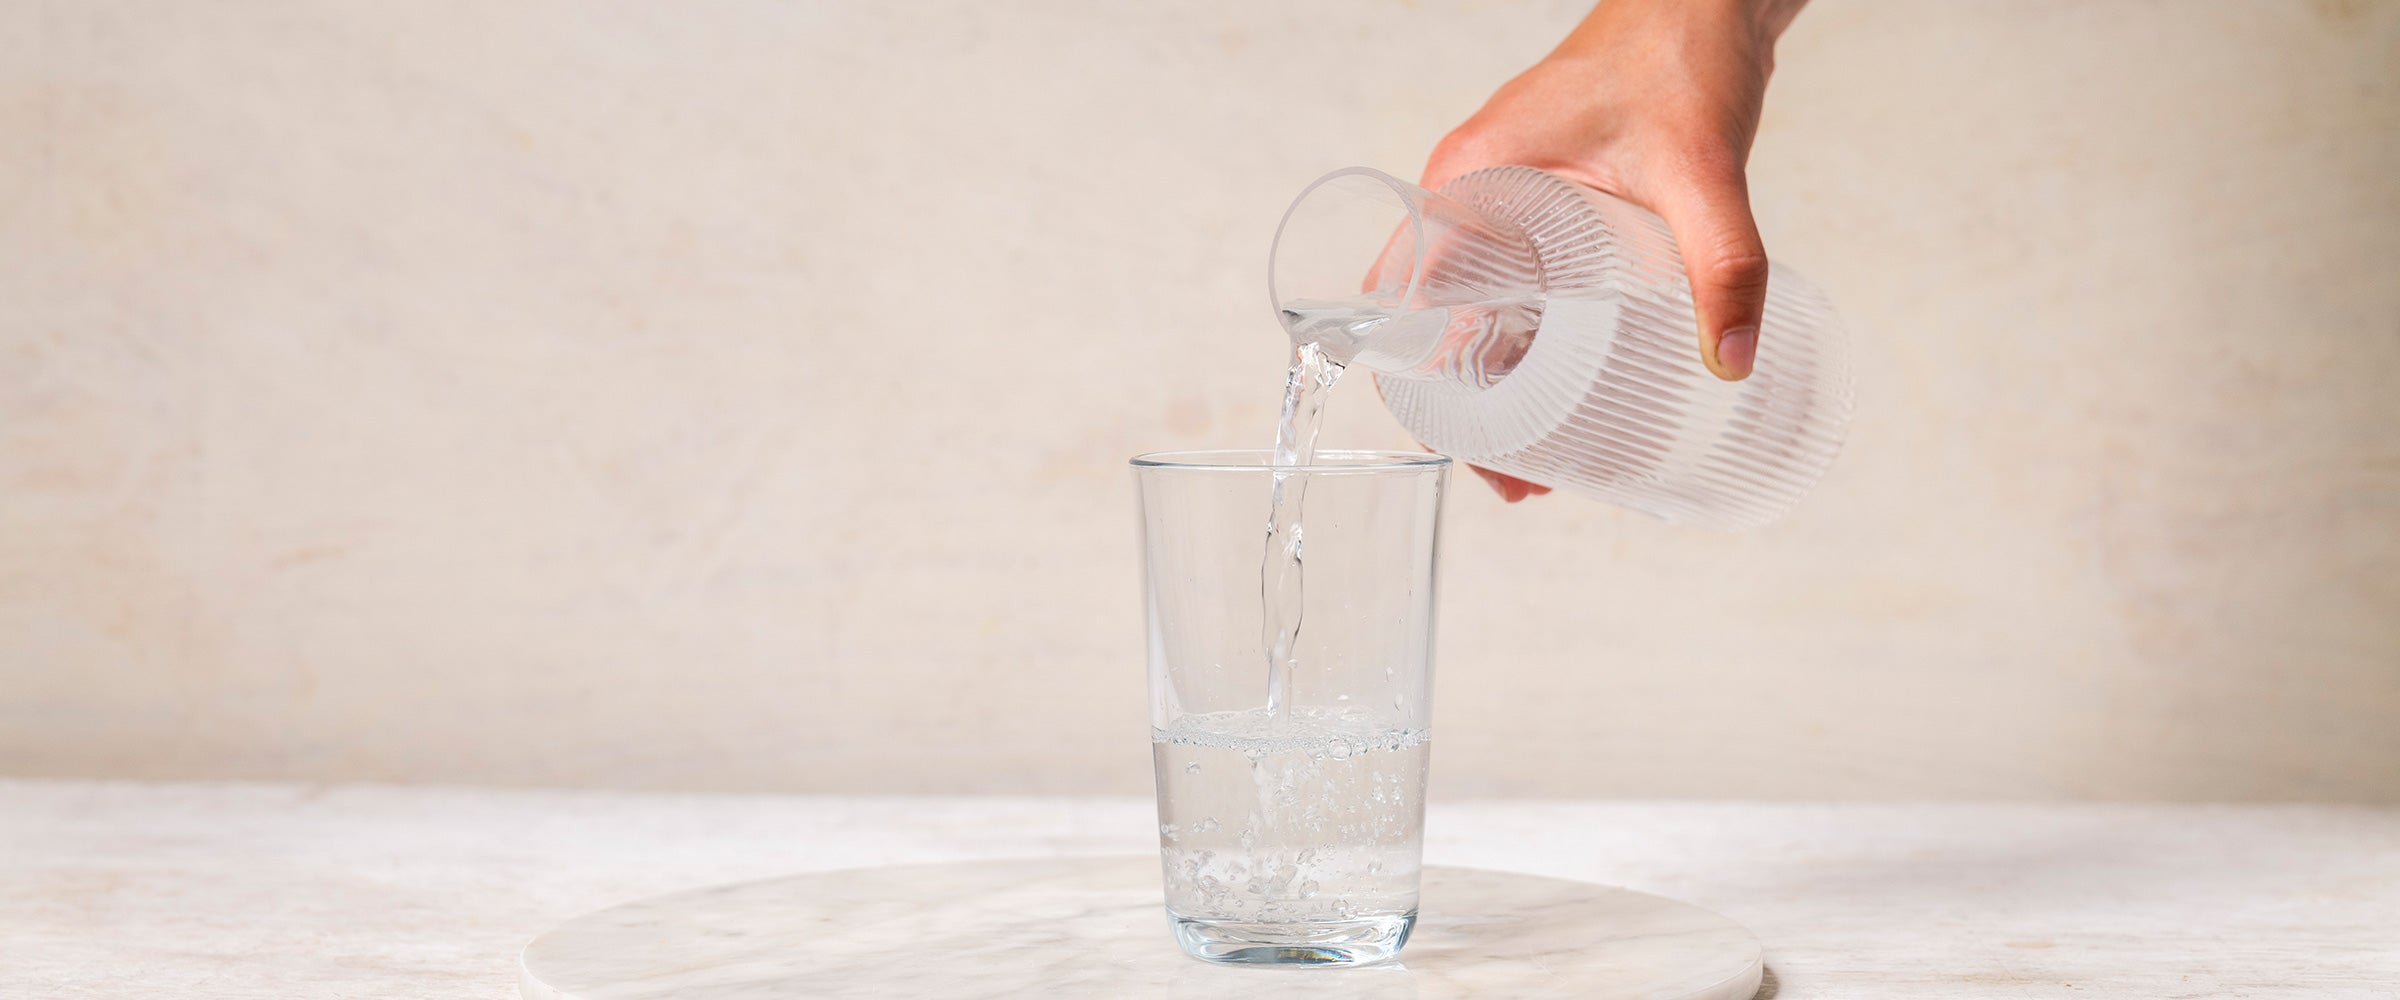 5 Gründe mehr Wasser zu trinken - Trinkst du genug?